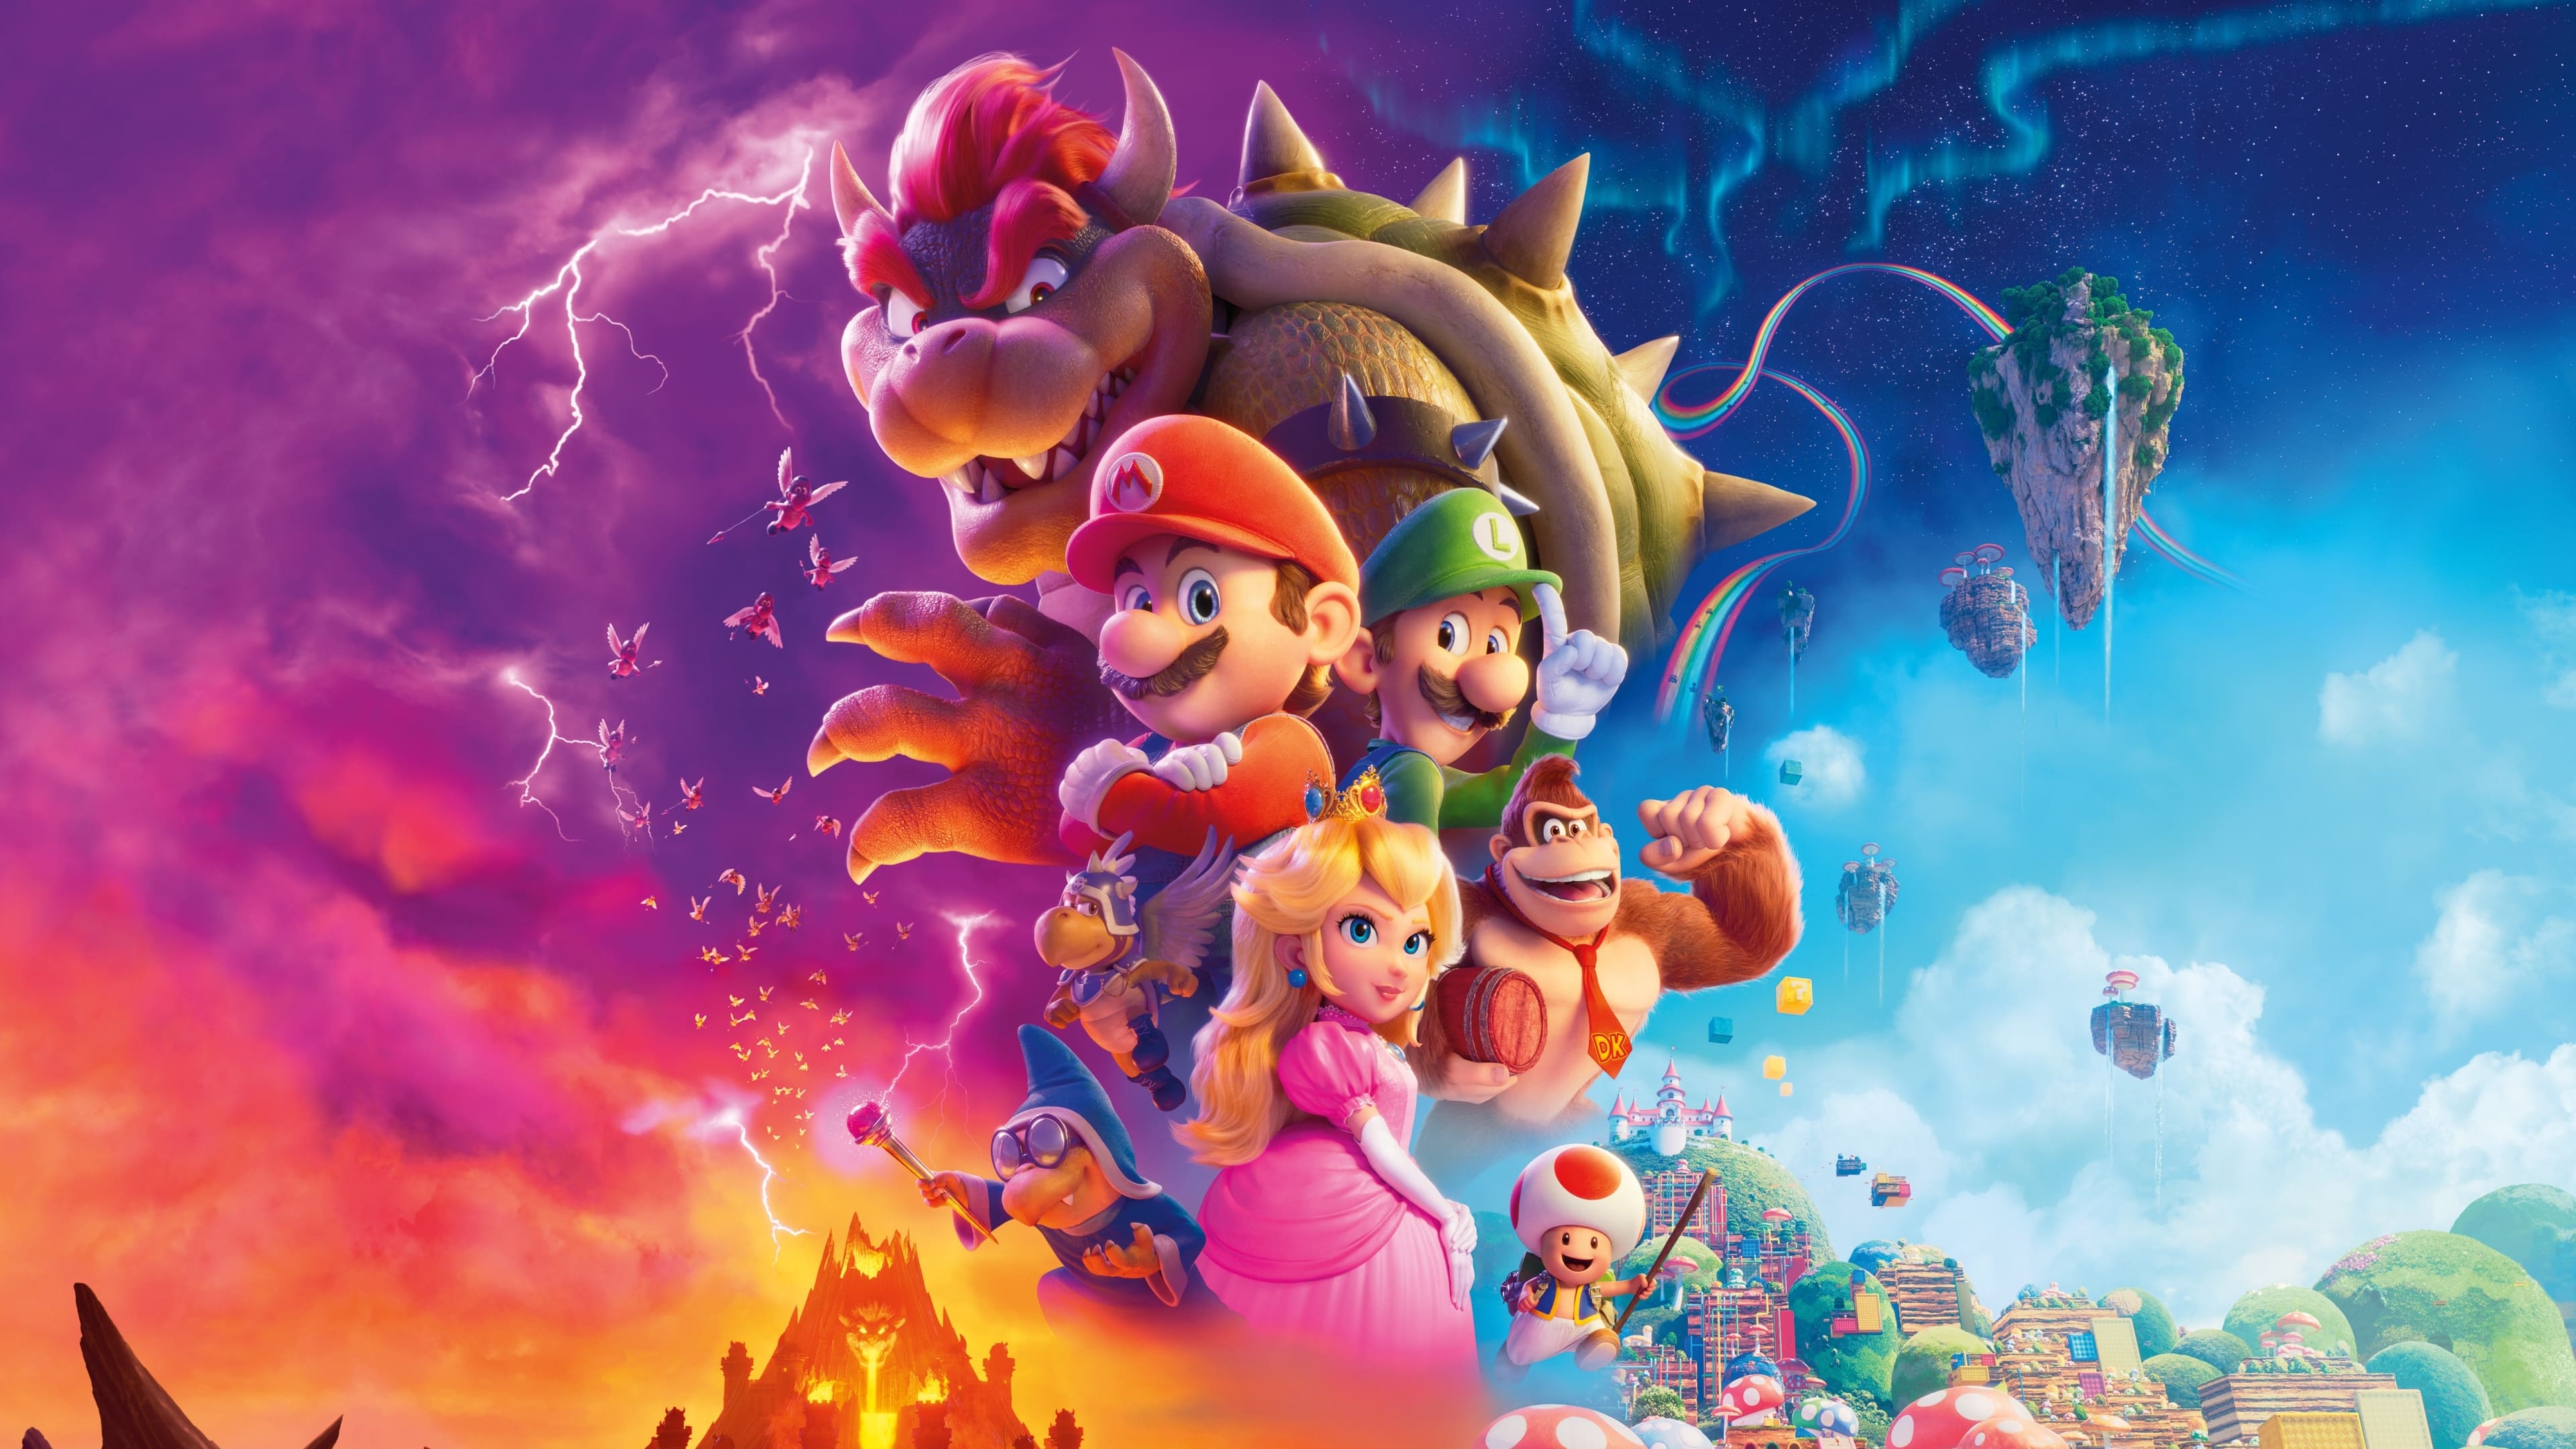 الملصق الرئيسي لفيلم Super Mario Bros من Illumination.